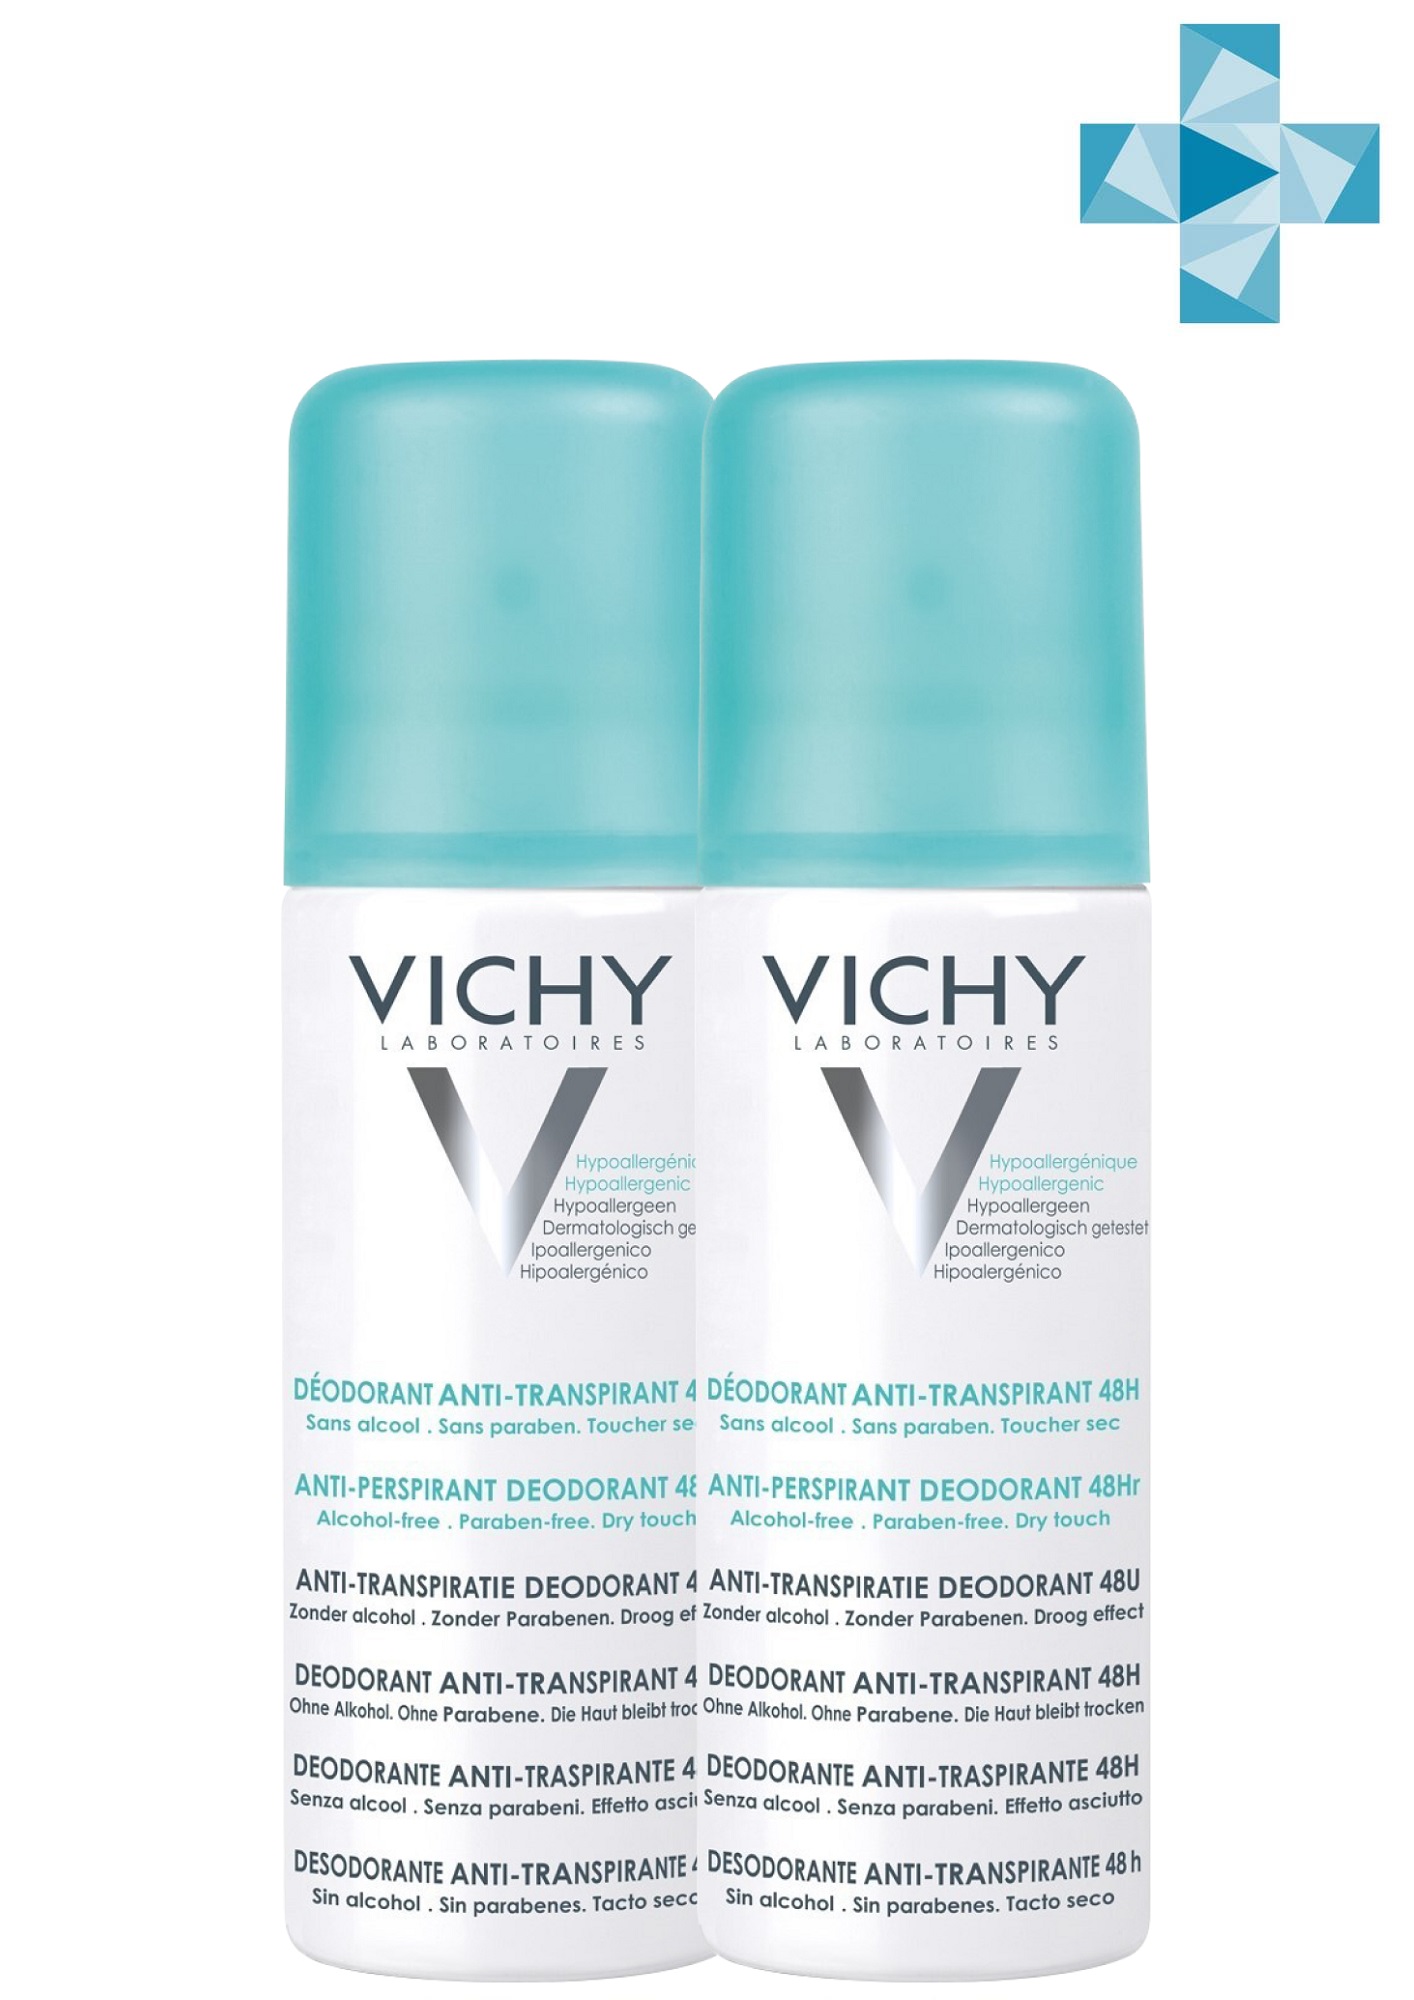 Vichy Комплект Дезодорант-аэрозоль регулирующий избыточное потоотделение 48 часов, 2 х 125 мл (Vichy, Deodorant) vichy дезодорант аэрозоль против избыточного потоотделения 48 часов защиты 125 мл vichy deodorant